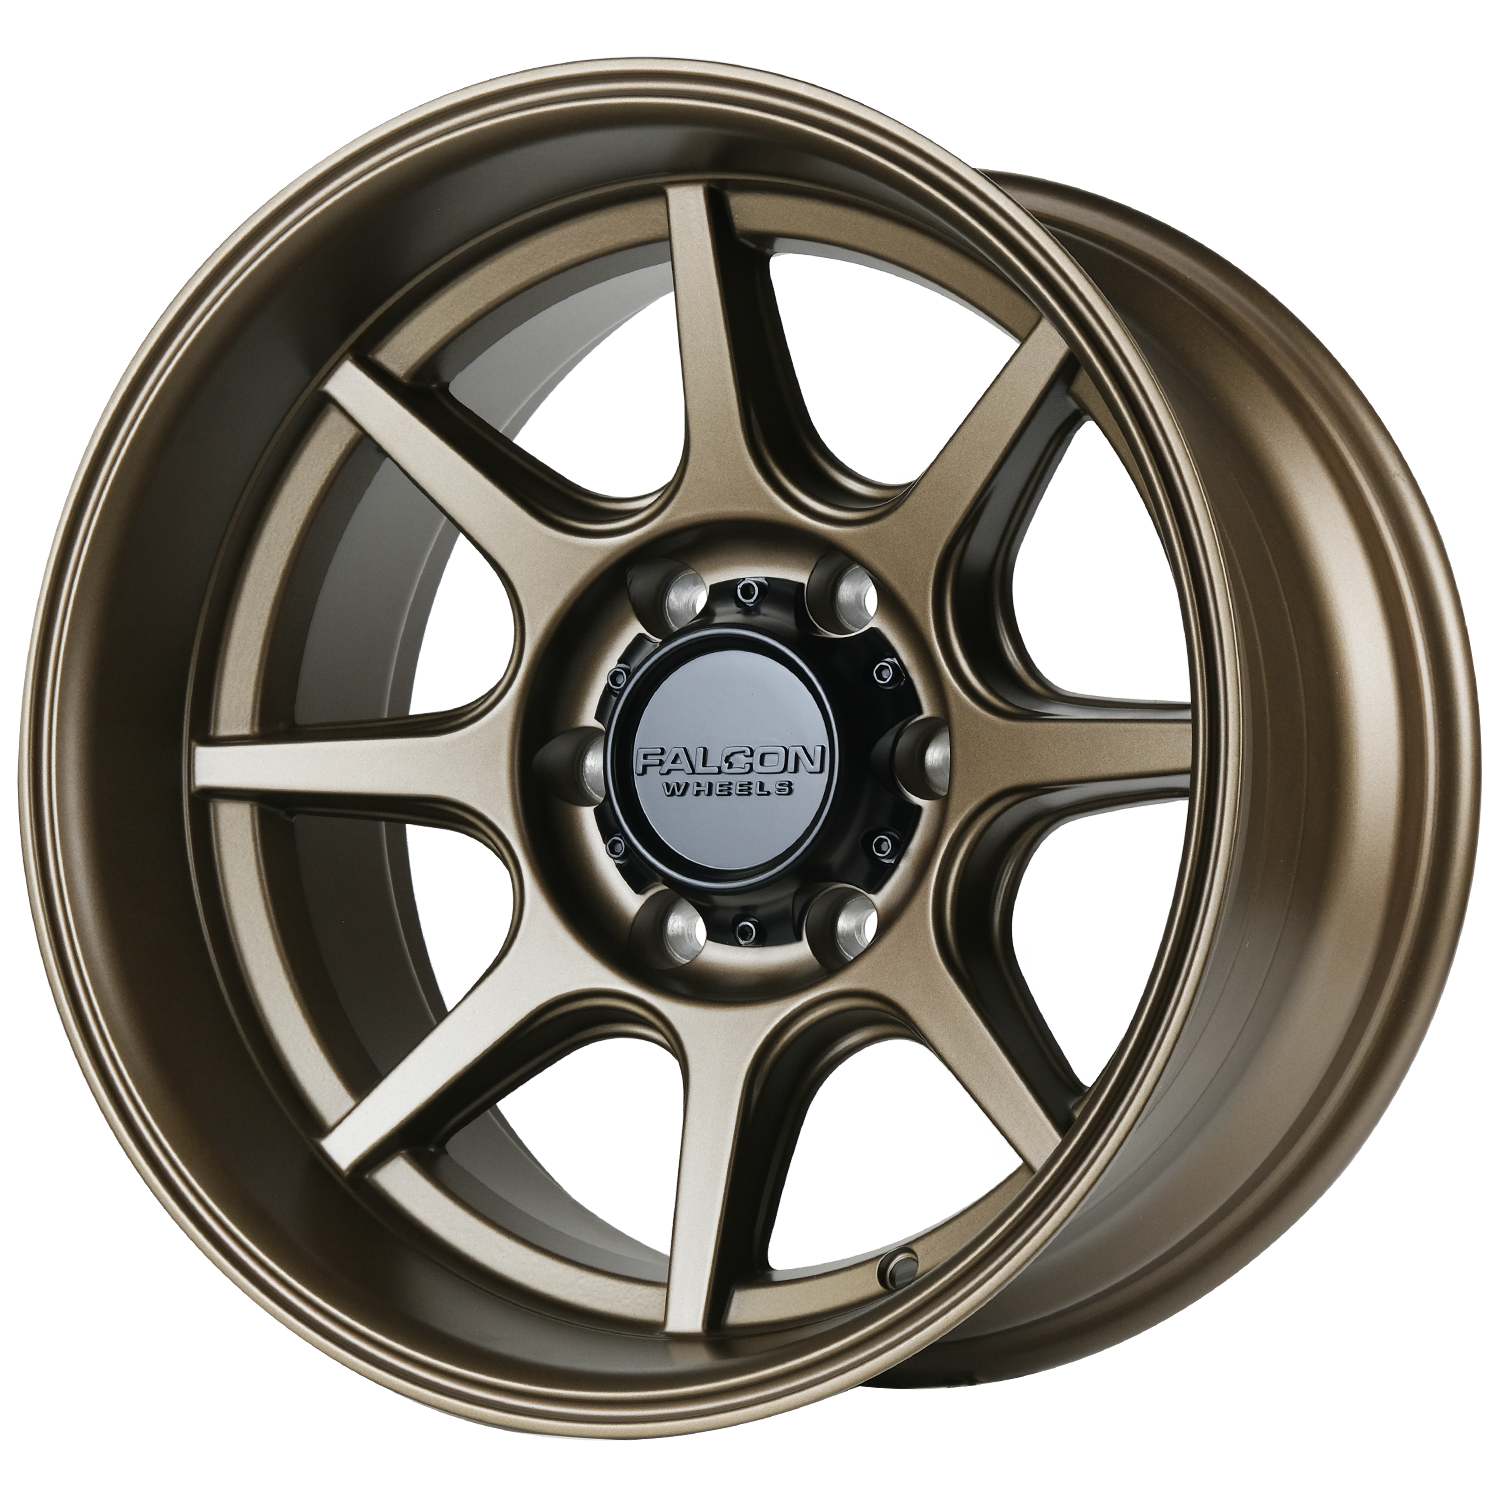 T8 "Seeker"- Bronze 17x9 - Premium Wheels from Falcon Off-Road Wheels - Just $295! Shop now at Falcon Off-Road Wheels 